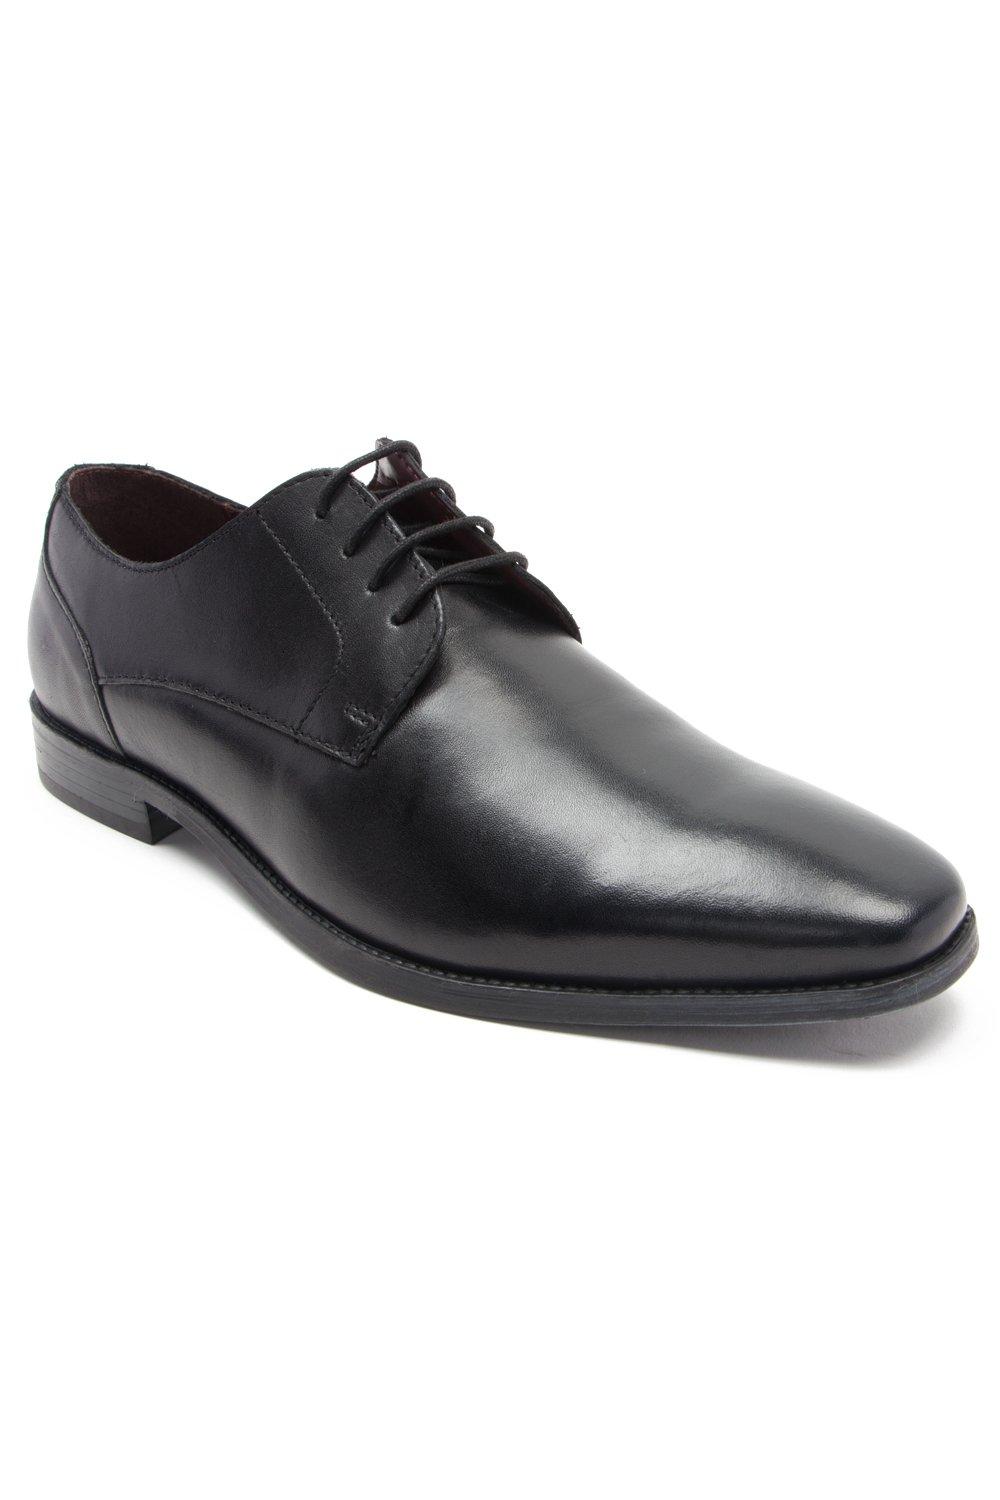 Формальные кожаные туфли дерби на шнуровке 'Falcon' Thomas Crick, черный мужские классические туфли свадебные оксфорды деловые туфли на шнуровке для офиса лето